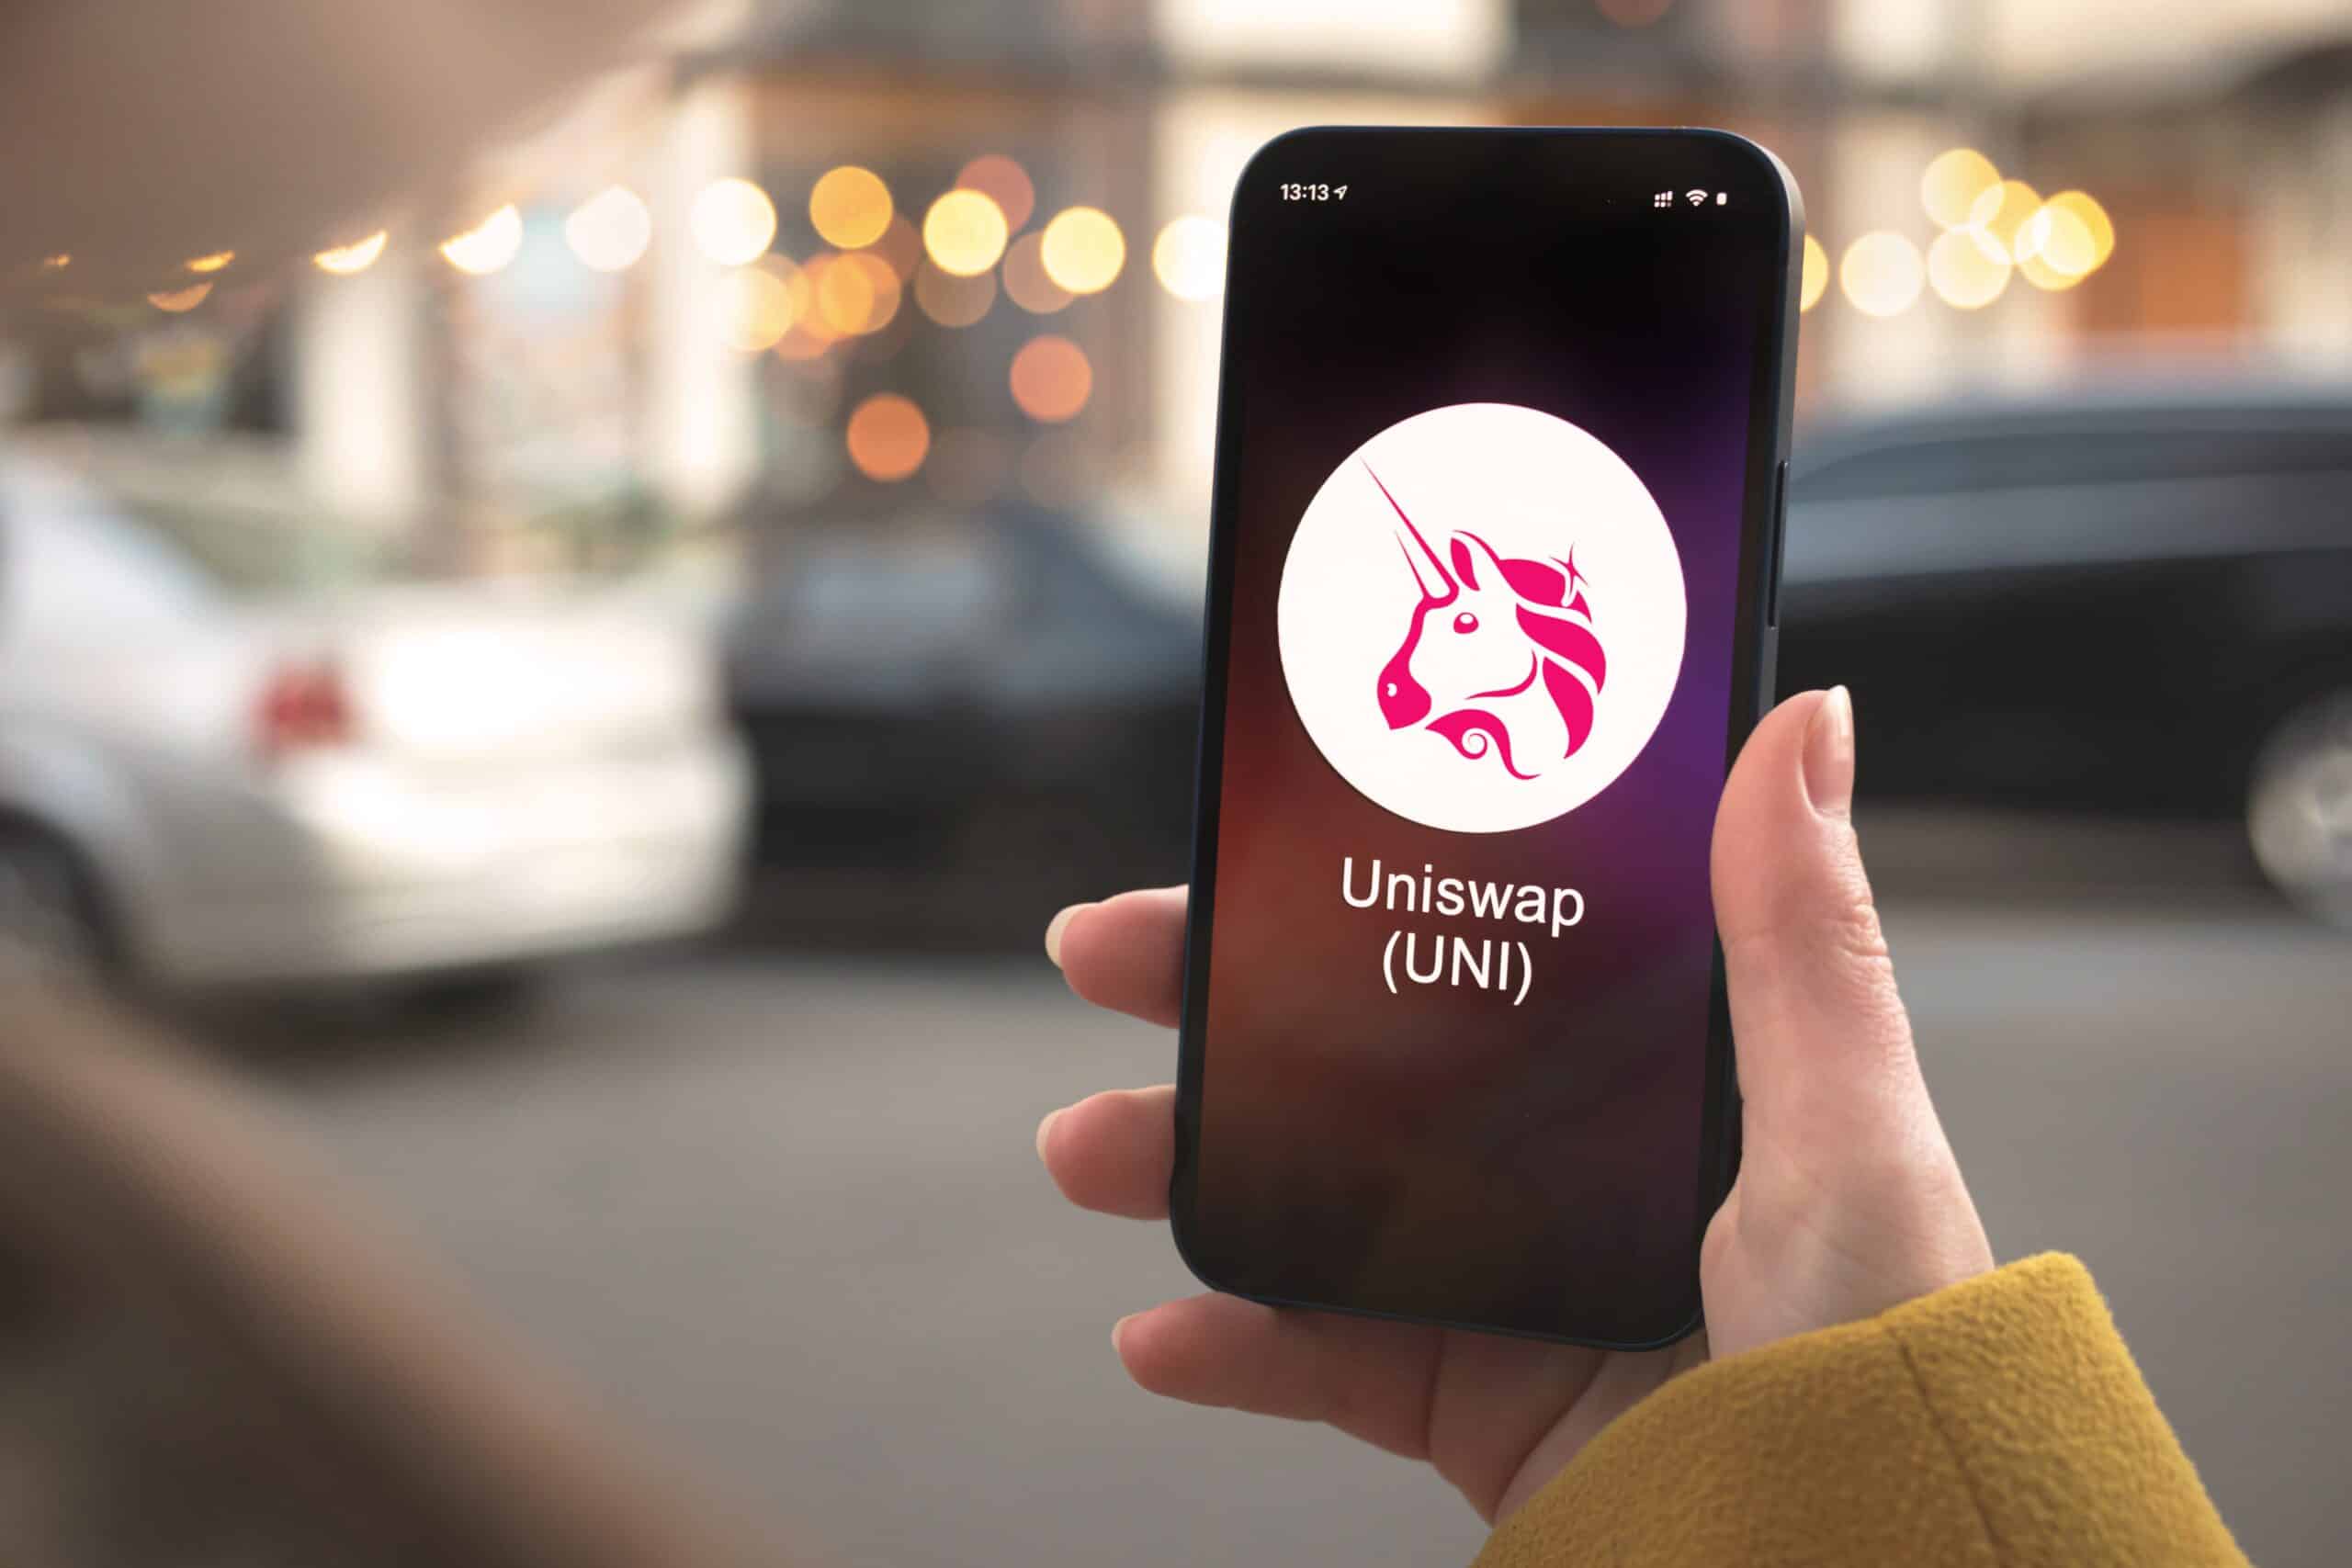 Il logo di Uniswap raffigurante un unicorno rosa viene visualizzato sul telefono in mano a una persona